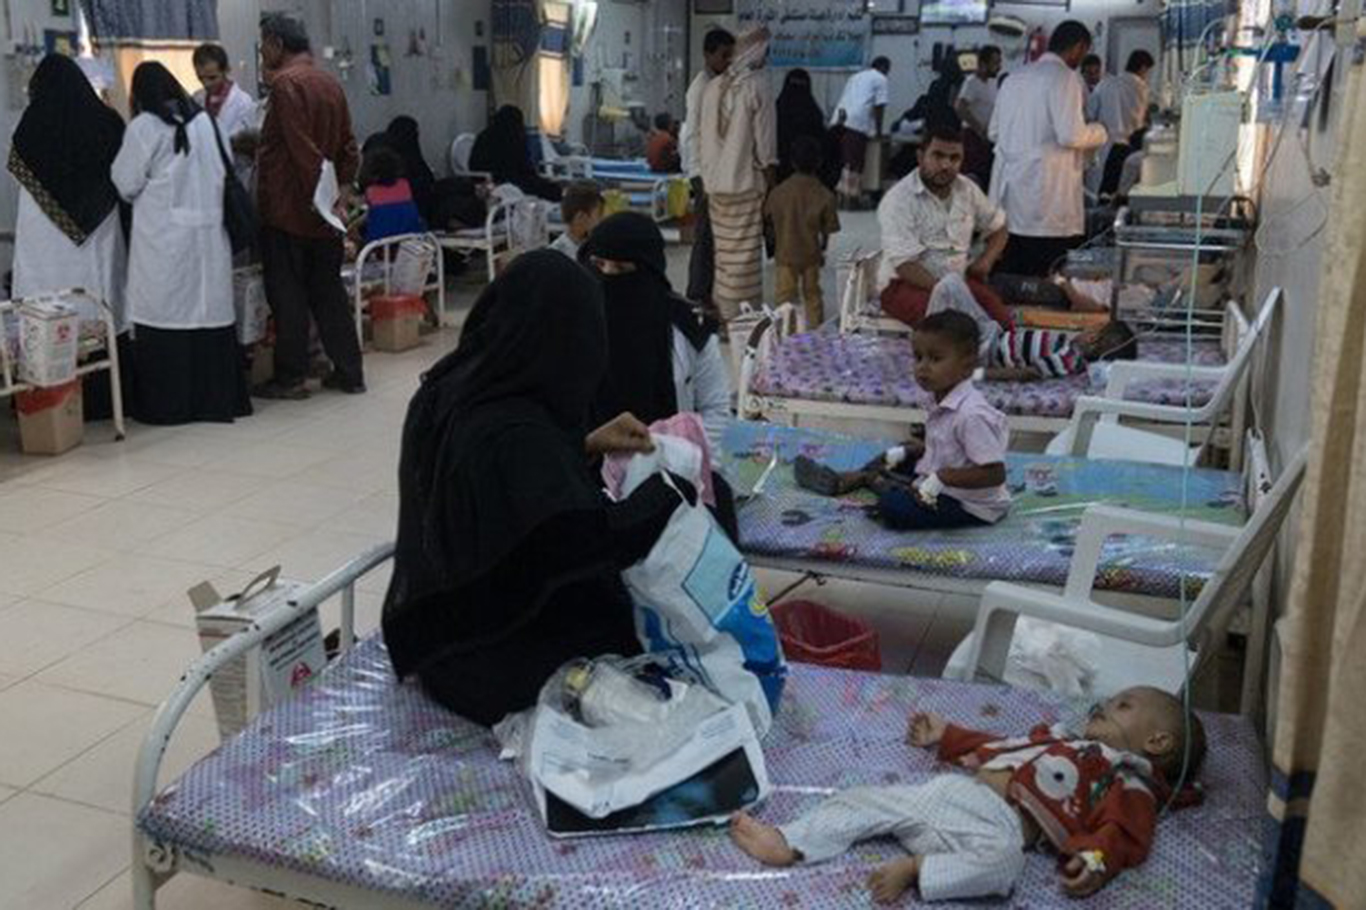 بسبب نقص الأدوية والمعدات الطبية..مرضى اليمن يكافحون من أجل البقاء